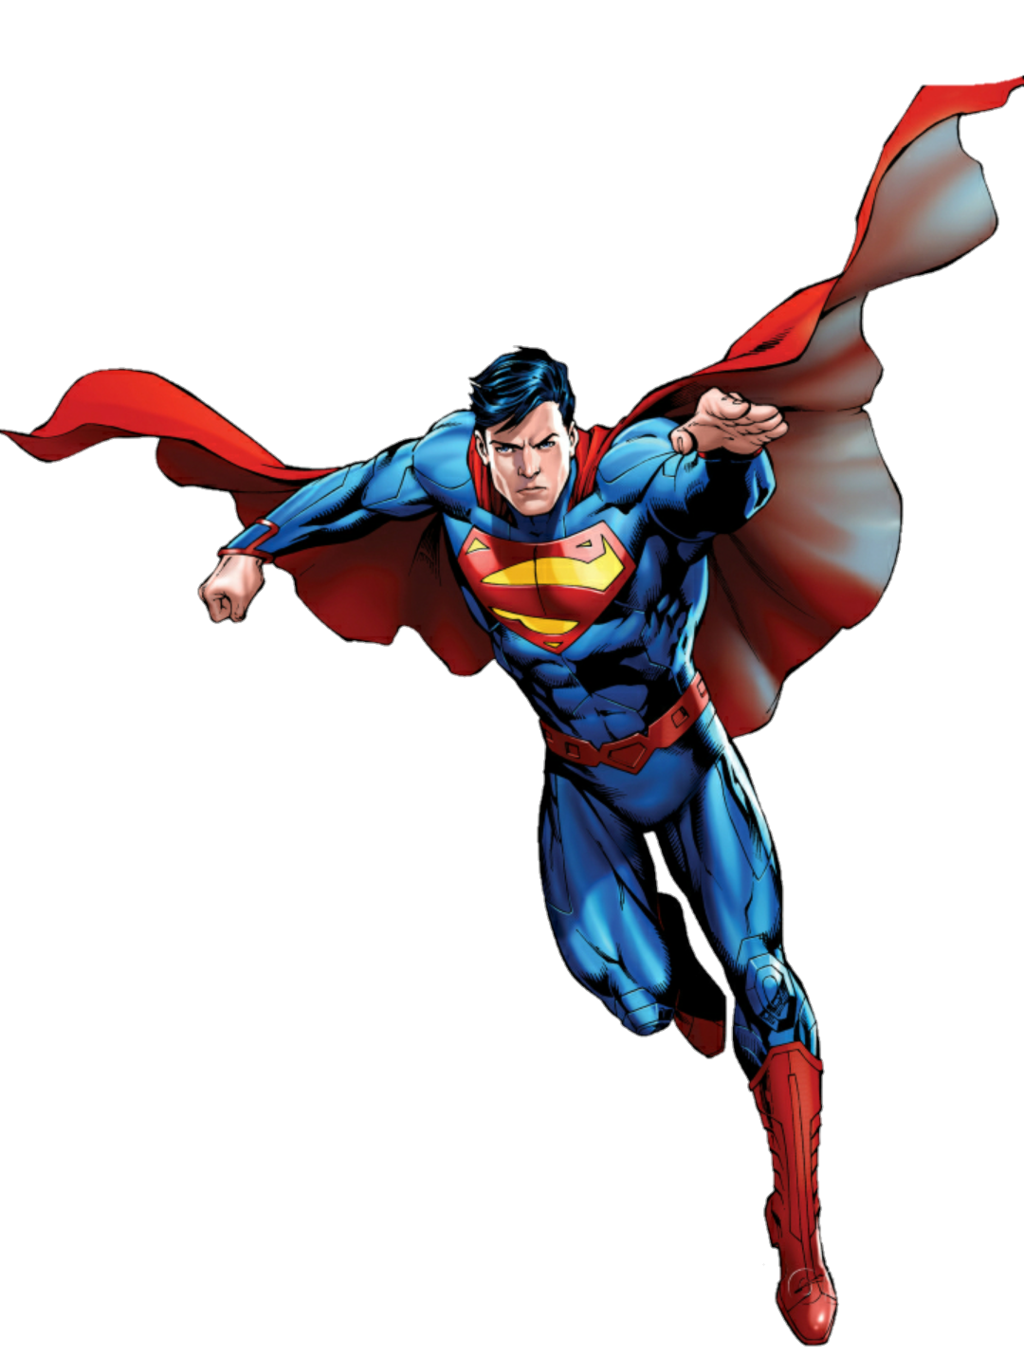 Superman Flying Скачать PNG Image